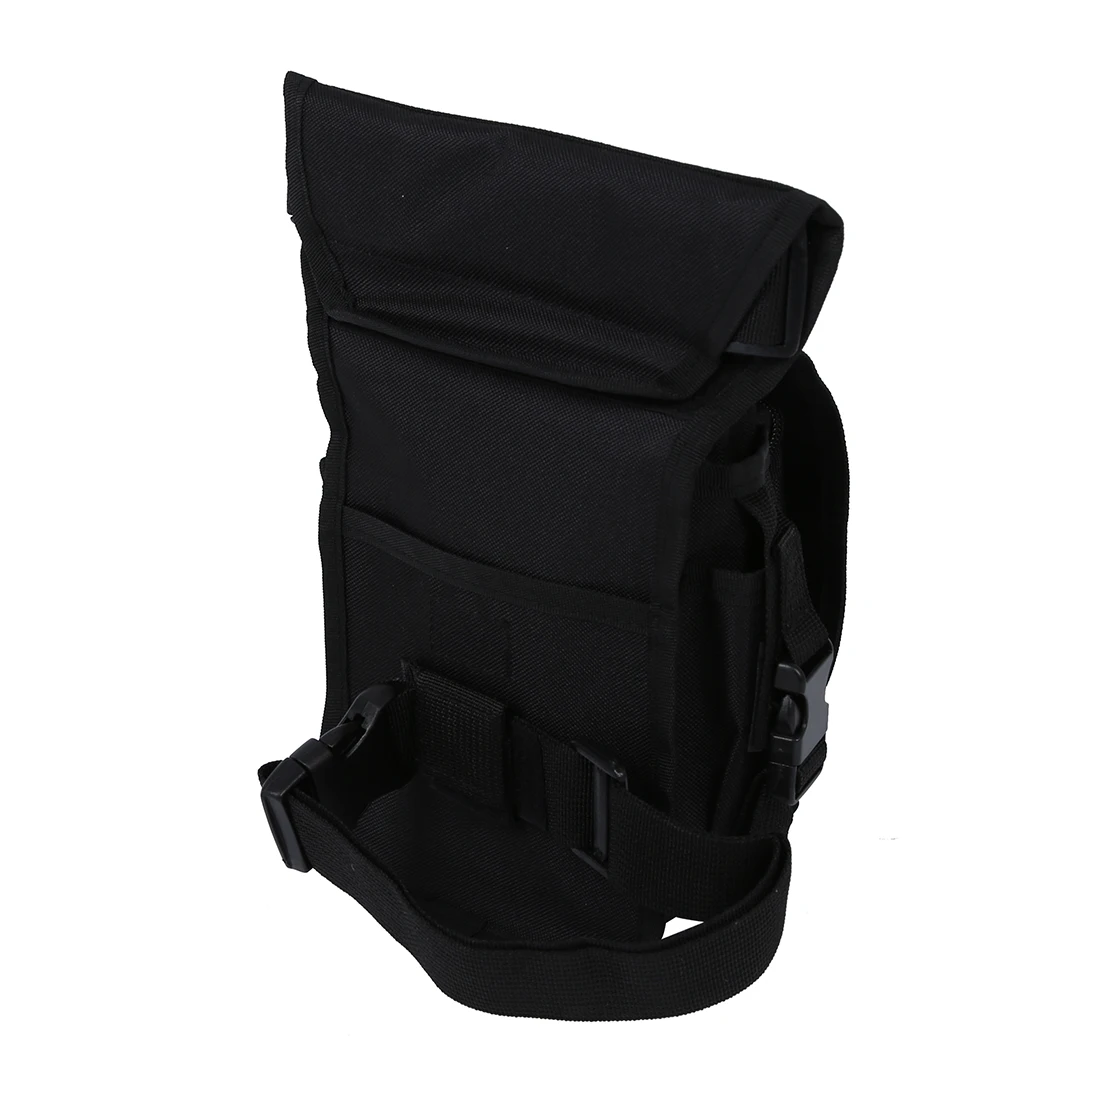 Горячая сумка пакет многофункциональный ремень для переноски размер бедра jambetaille карман на ноге велосипед Отдых Туризм спортивный